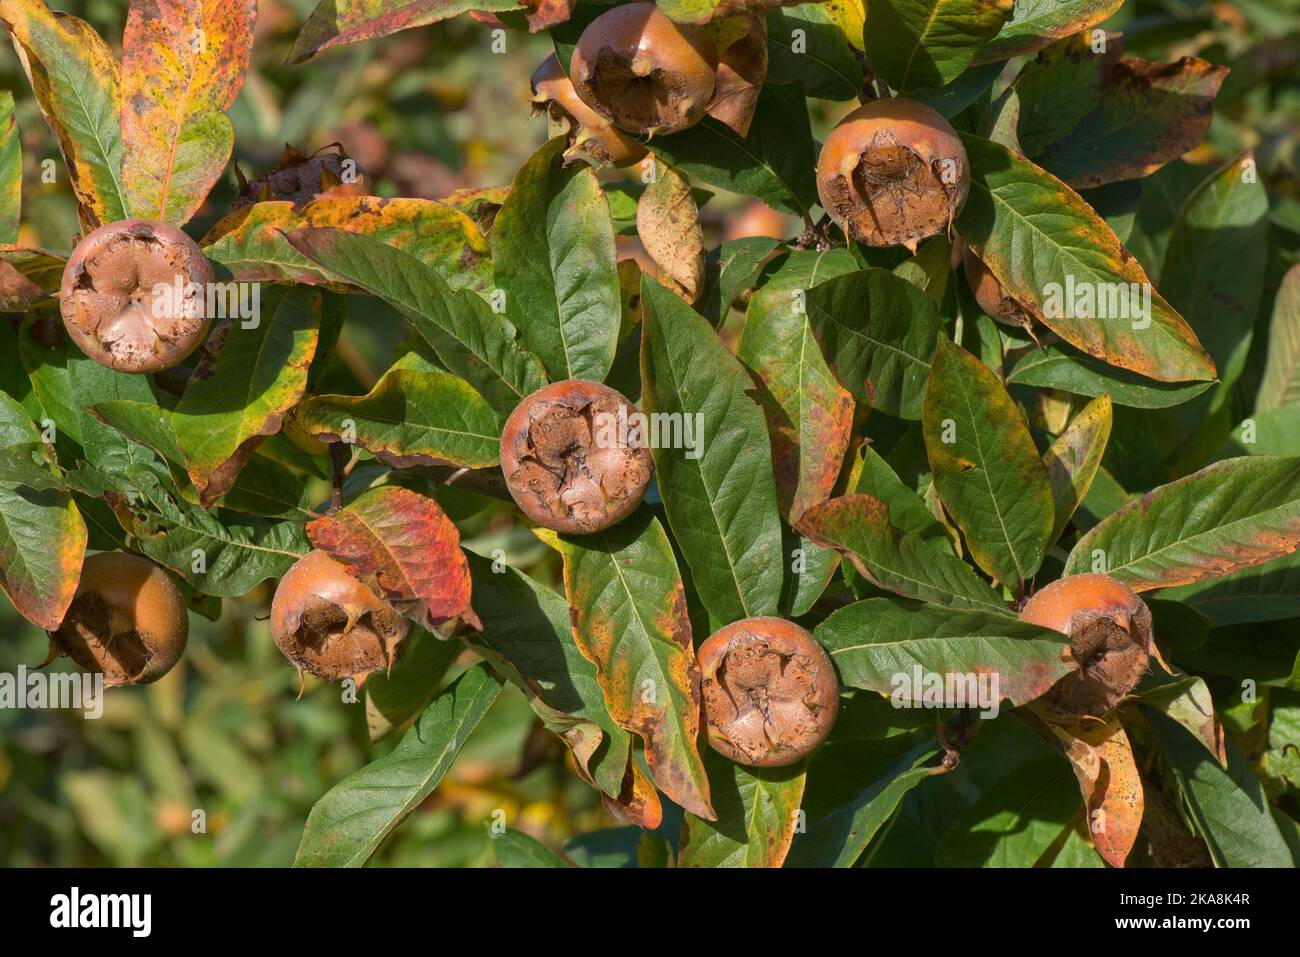 Médlar mature (Mespilus germanica) fruit complet, qui est émouté avant d'utiliser, sur l'arbre avec des feuilles en couleur d'automne, Berkshire, octobre Banque D'Images